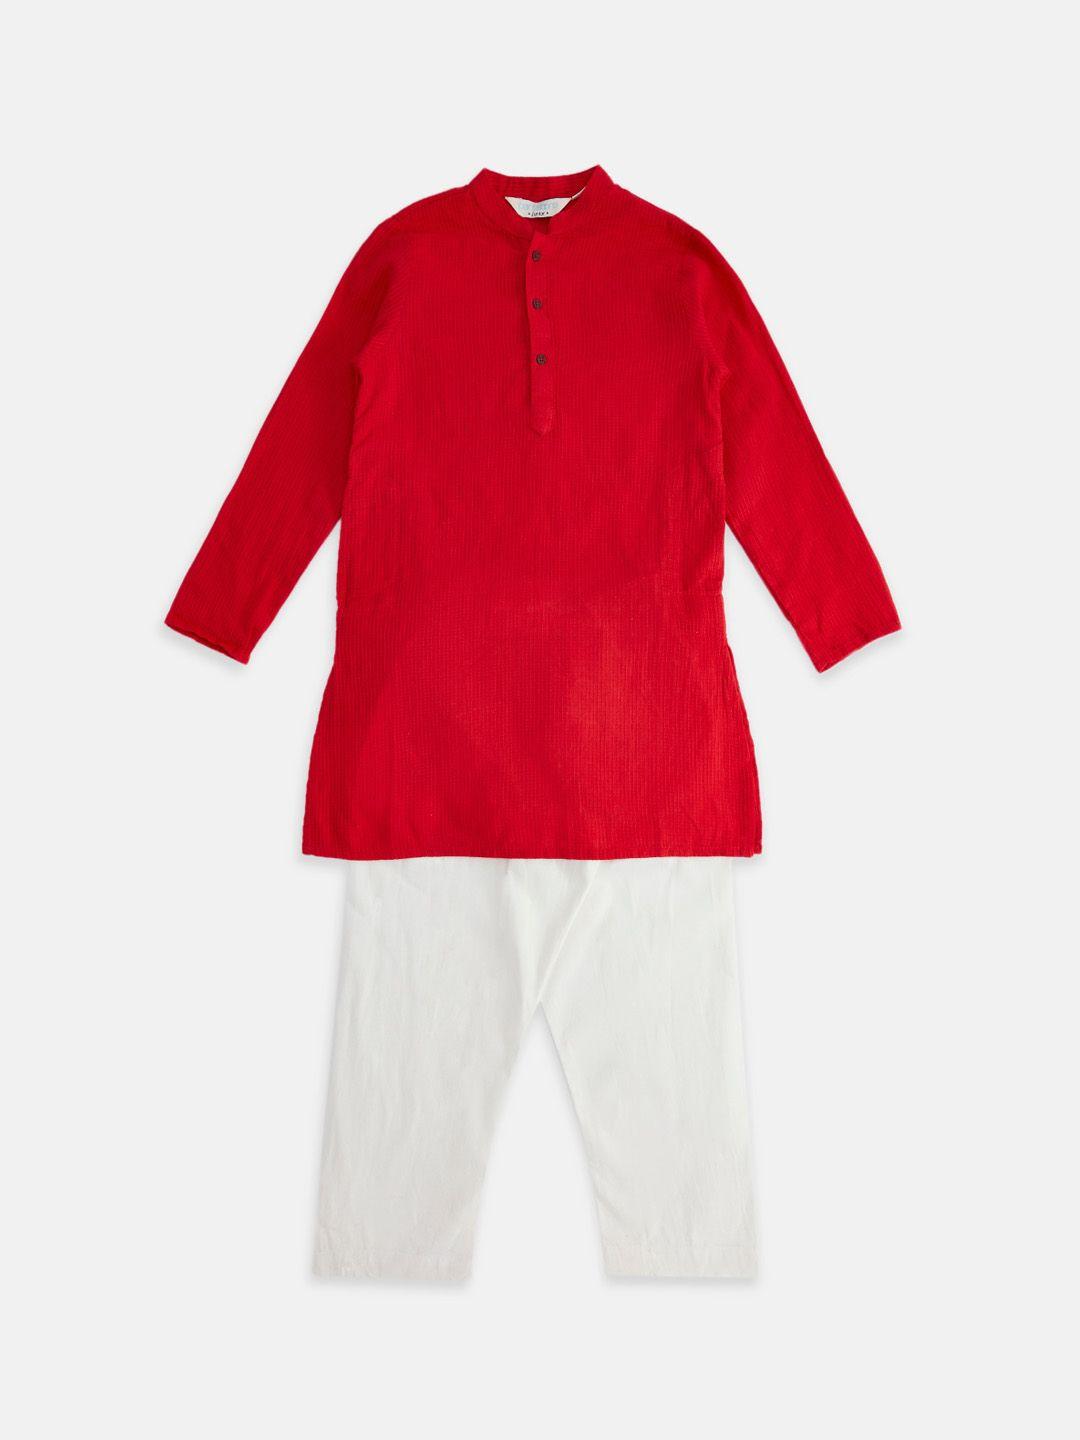 indus route by pantaloons boys pure cotton kurta with pyjamas